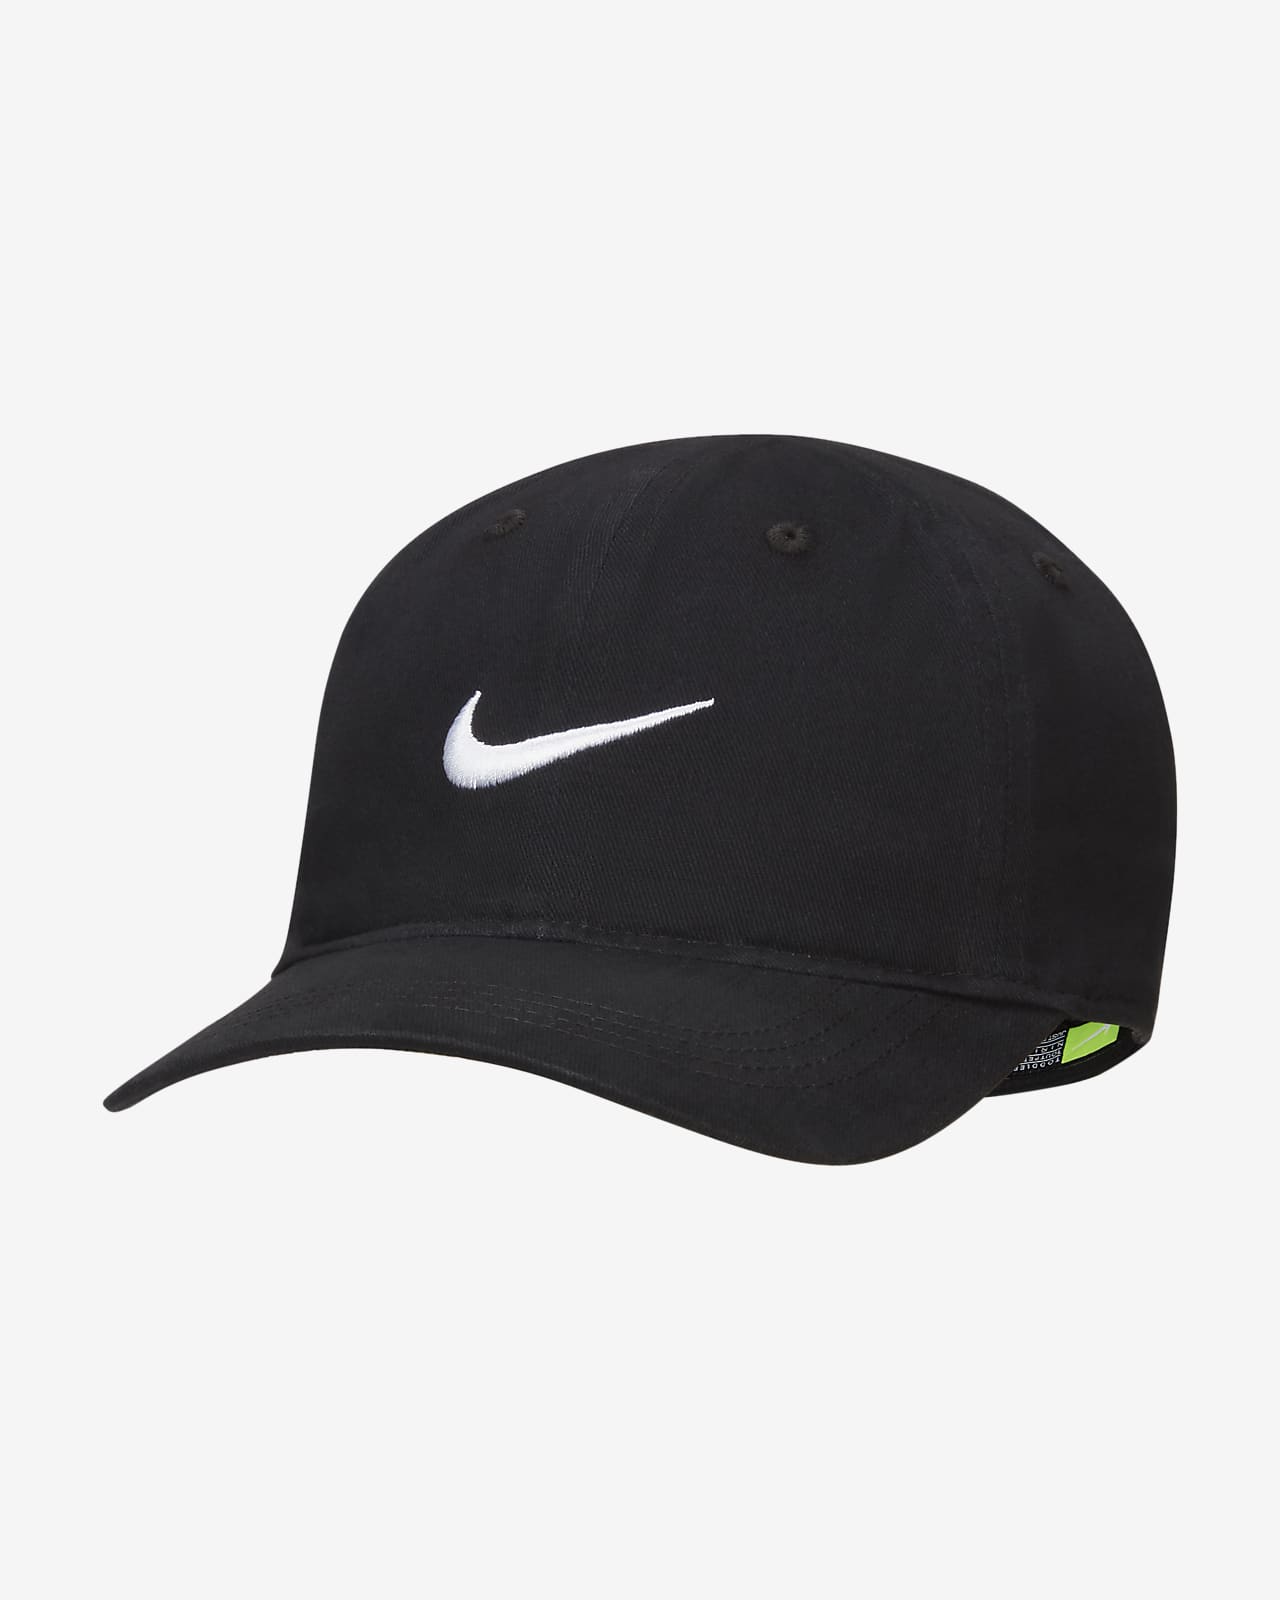 Nike Swoosh Ballcap Toddler Hat. Nike.com